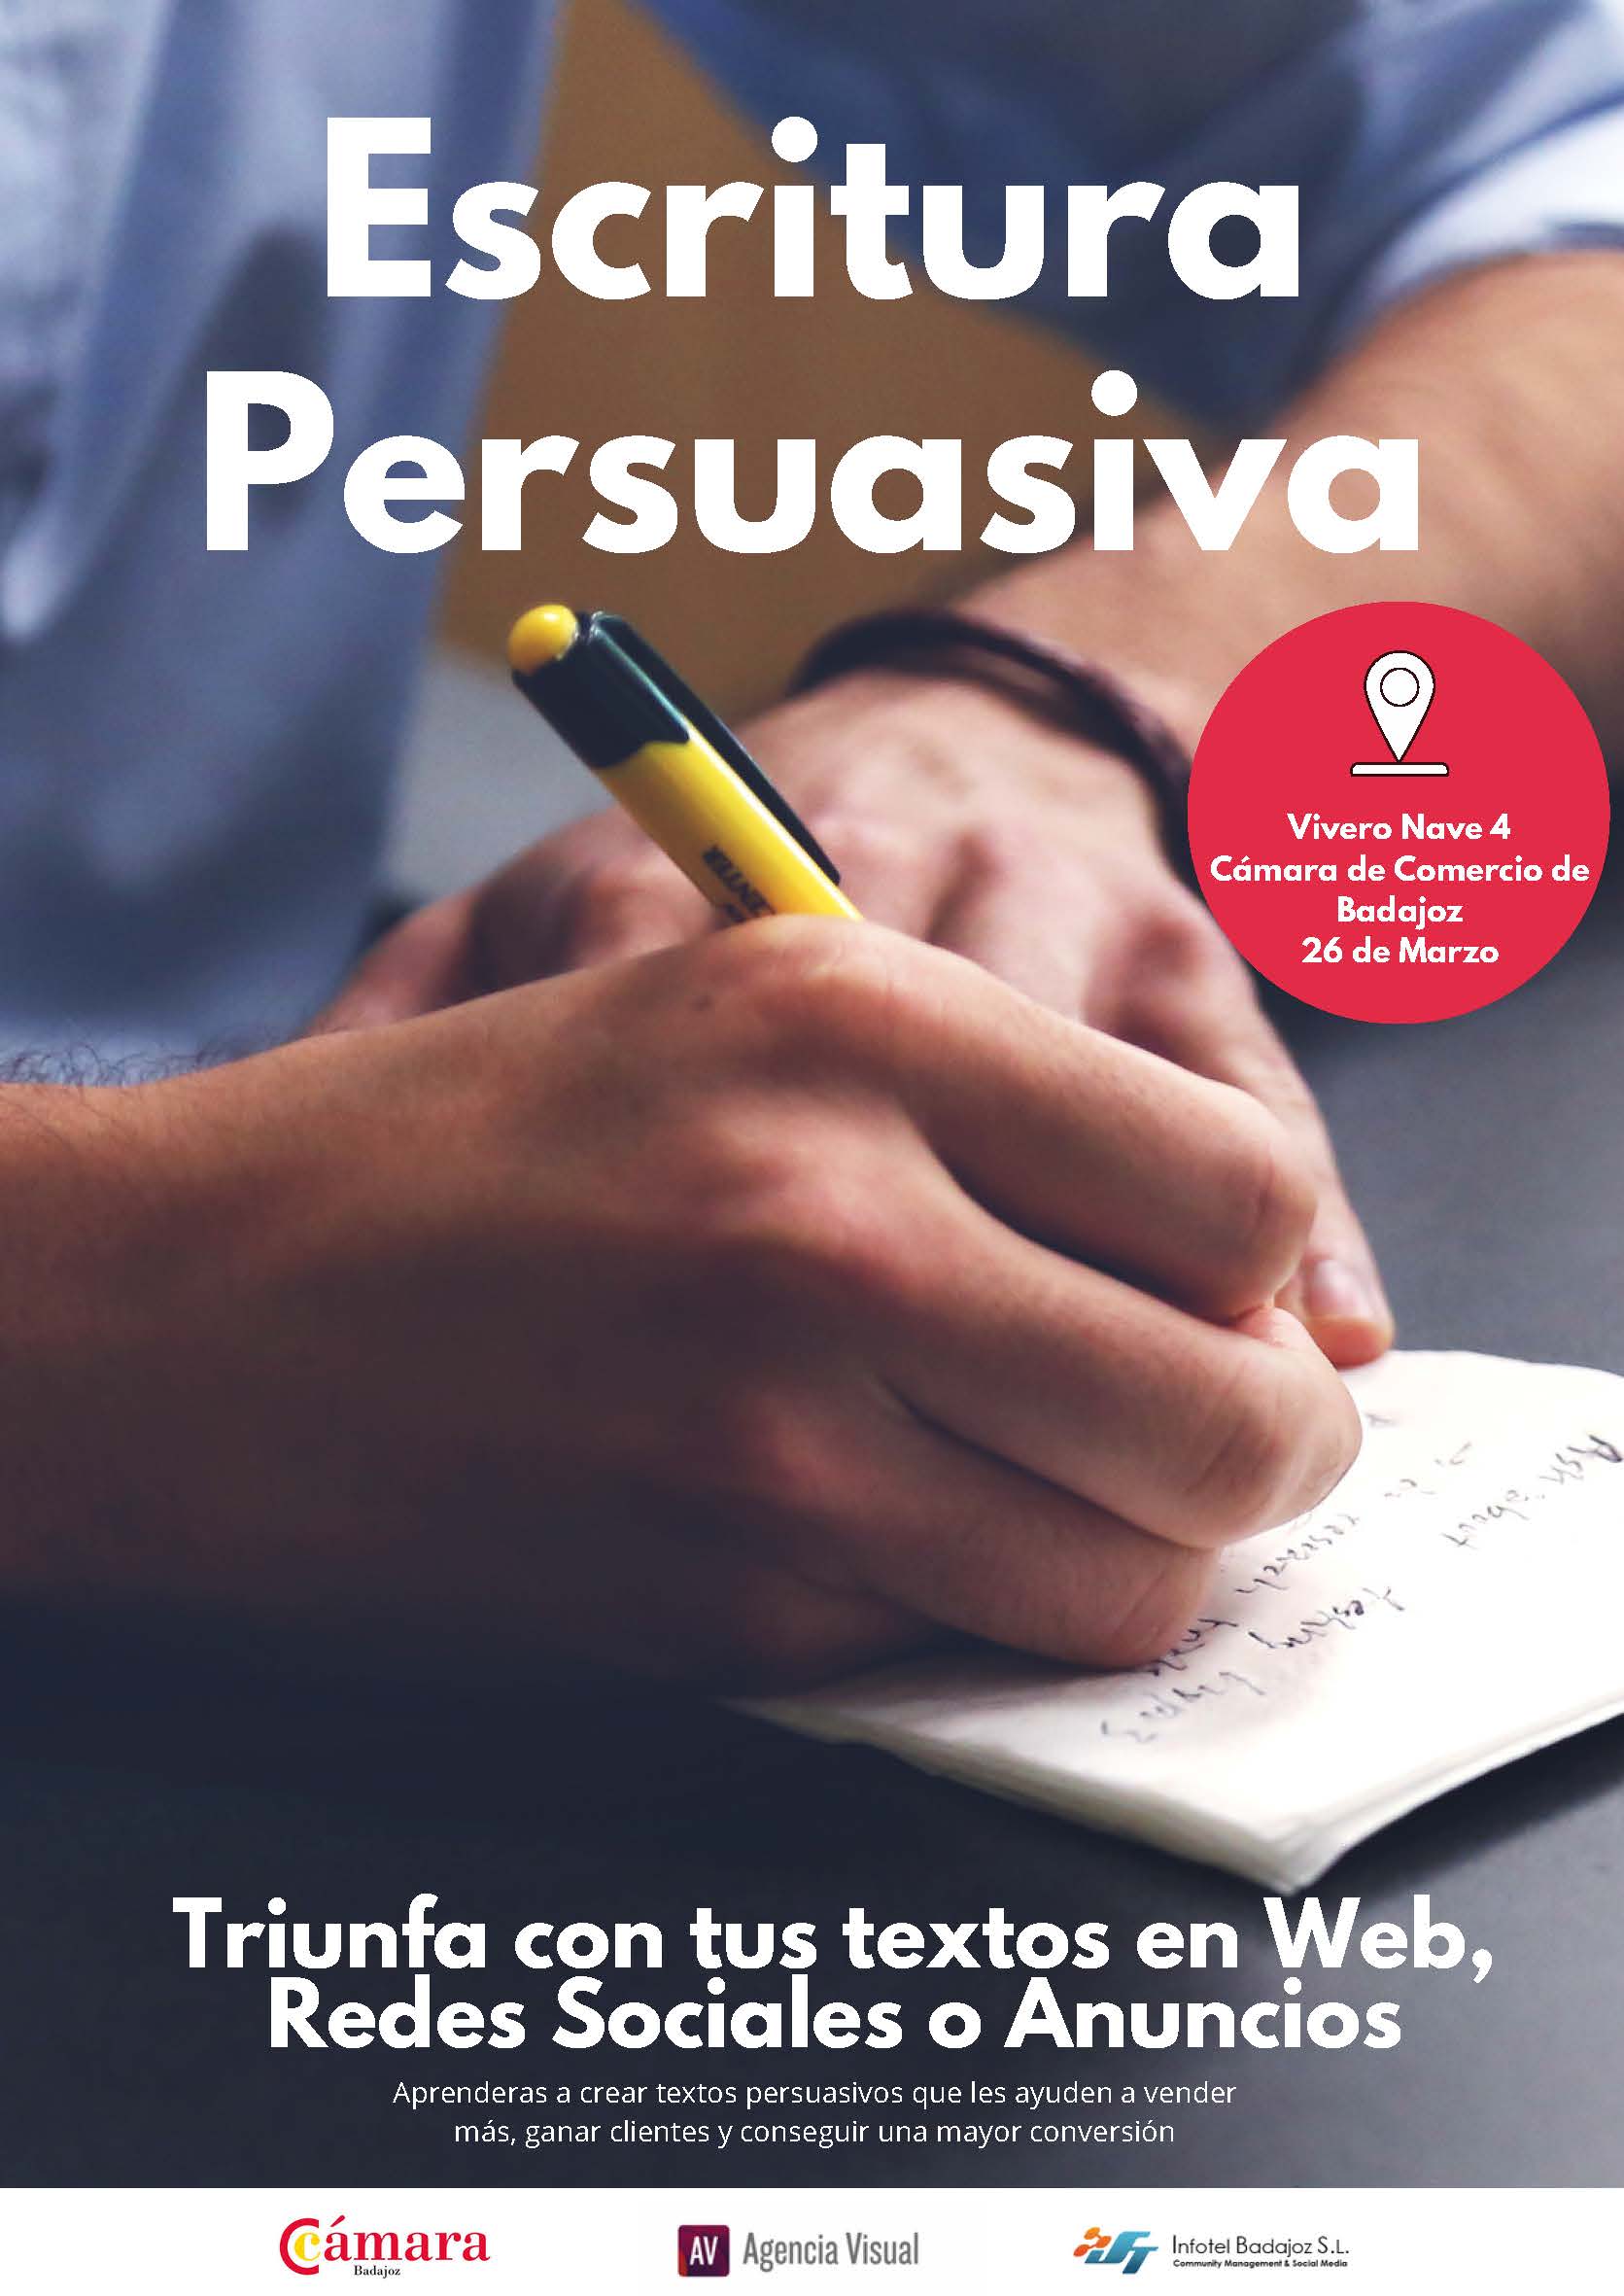 Escritura persuasiva: triunfa con tus textos en web, redes sociales y anuncios